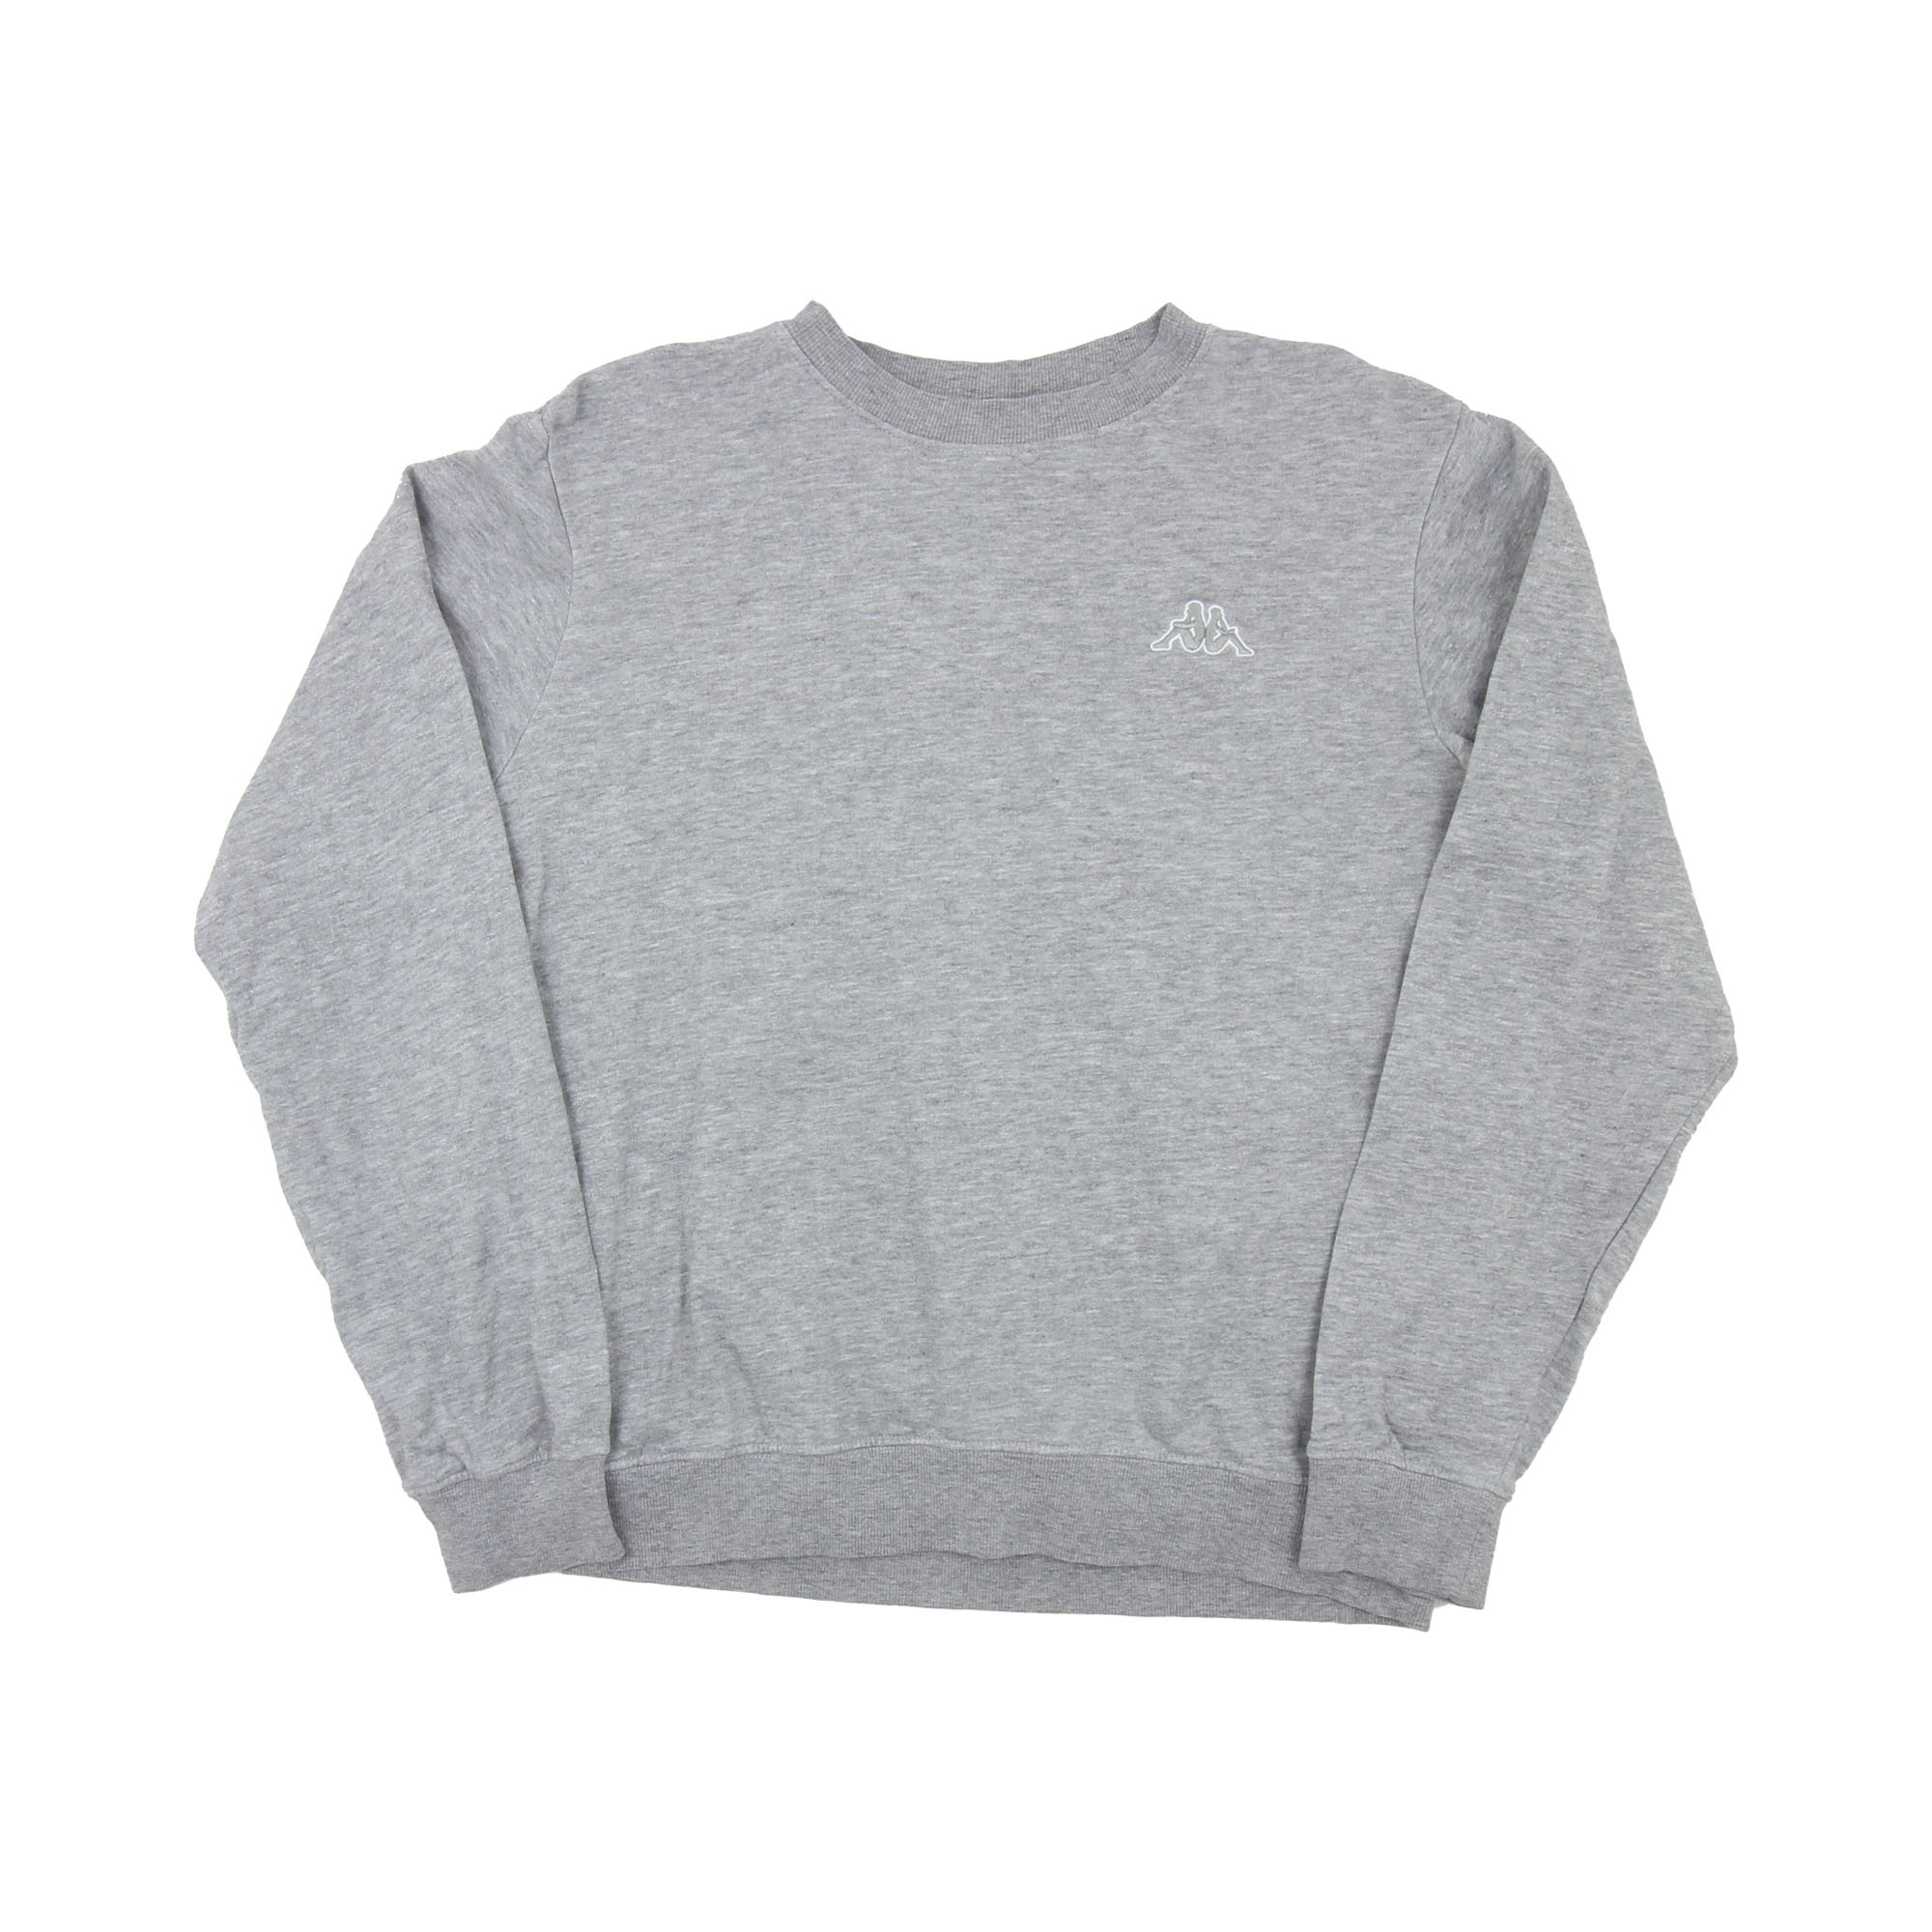 Kappa Sweatshirt Grey -  M/L